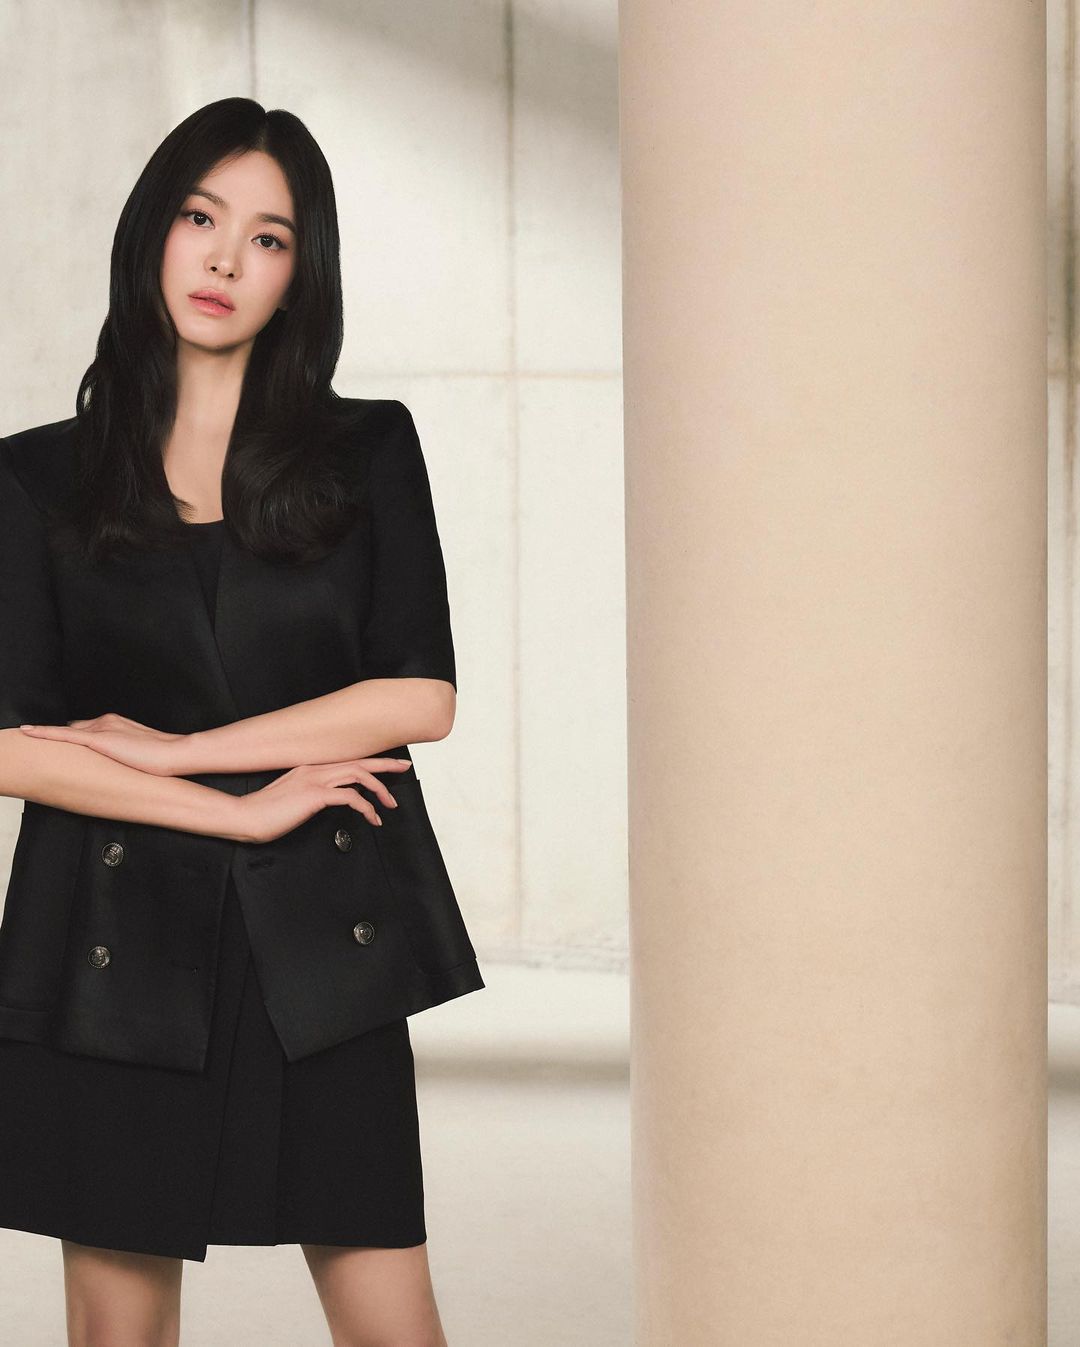 Song Hye Kyo khiến người hâm mộ thổn thức với vẻ đẹp không tuổi, đúng chuẩn tượng đài nhan sắc xứ Hàn- Ảnh 5.